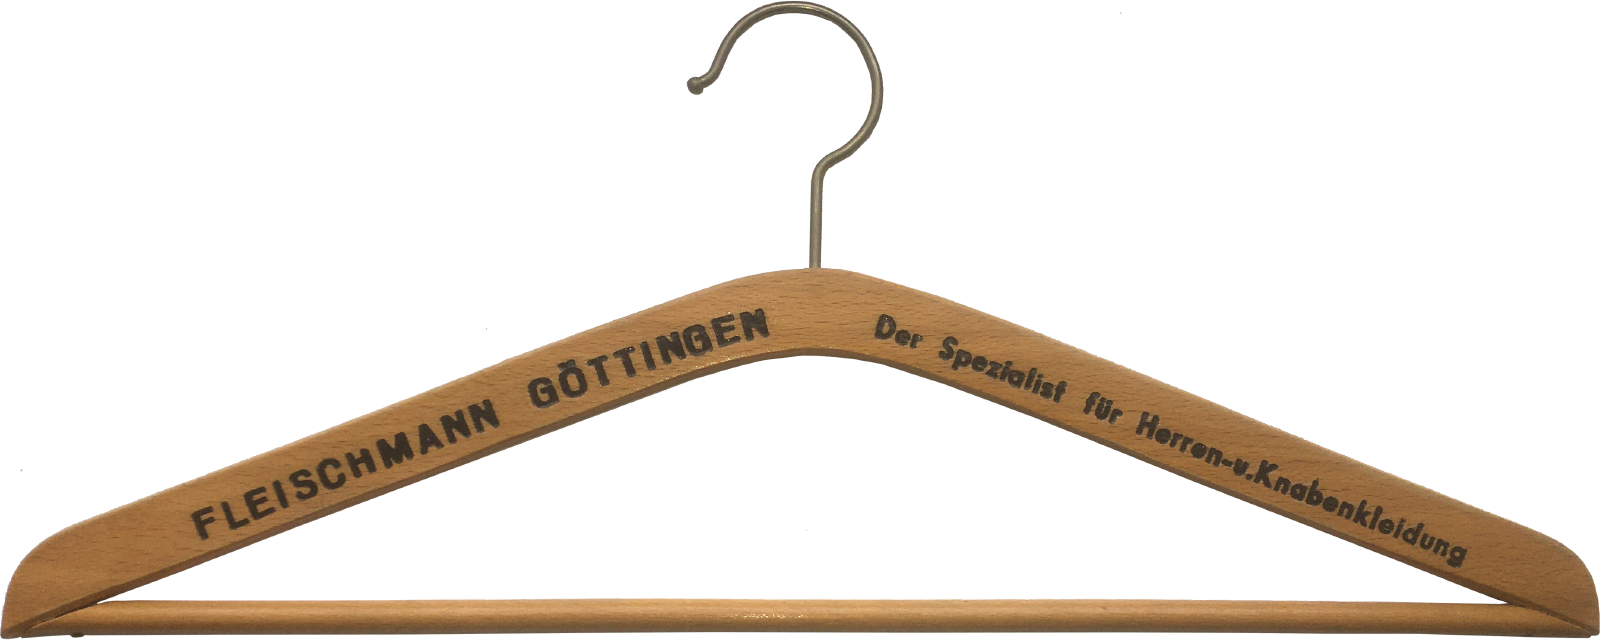 Fleischmann Göttingen